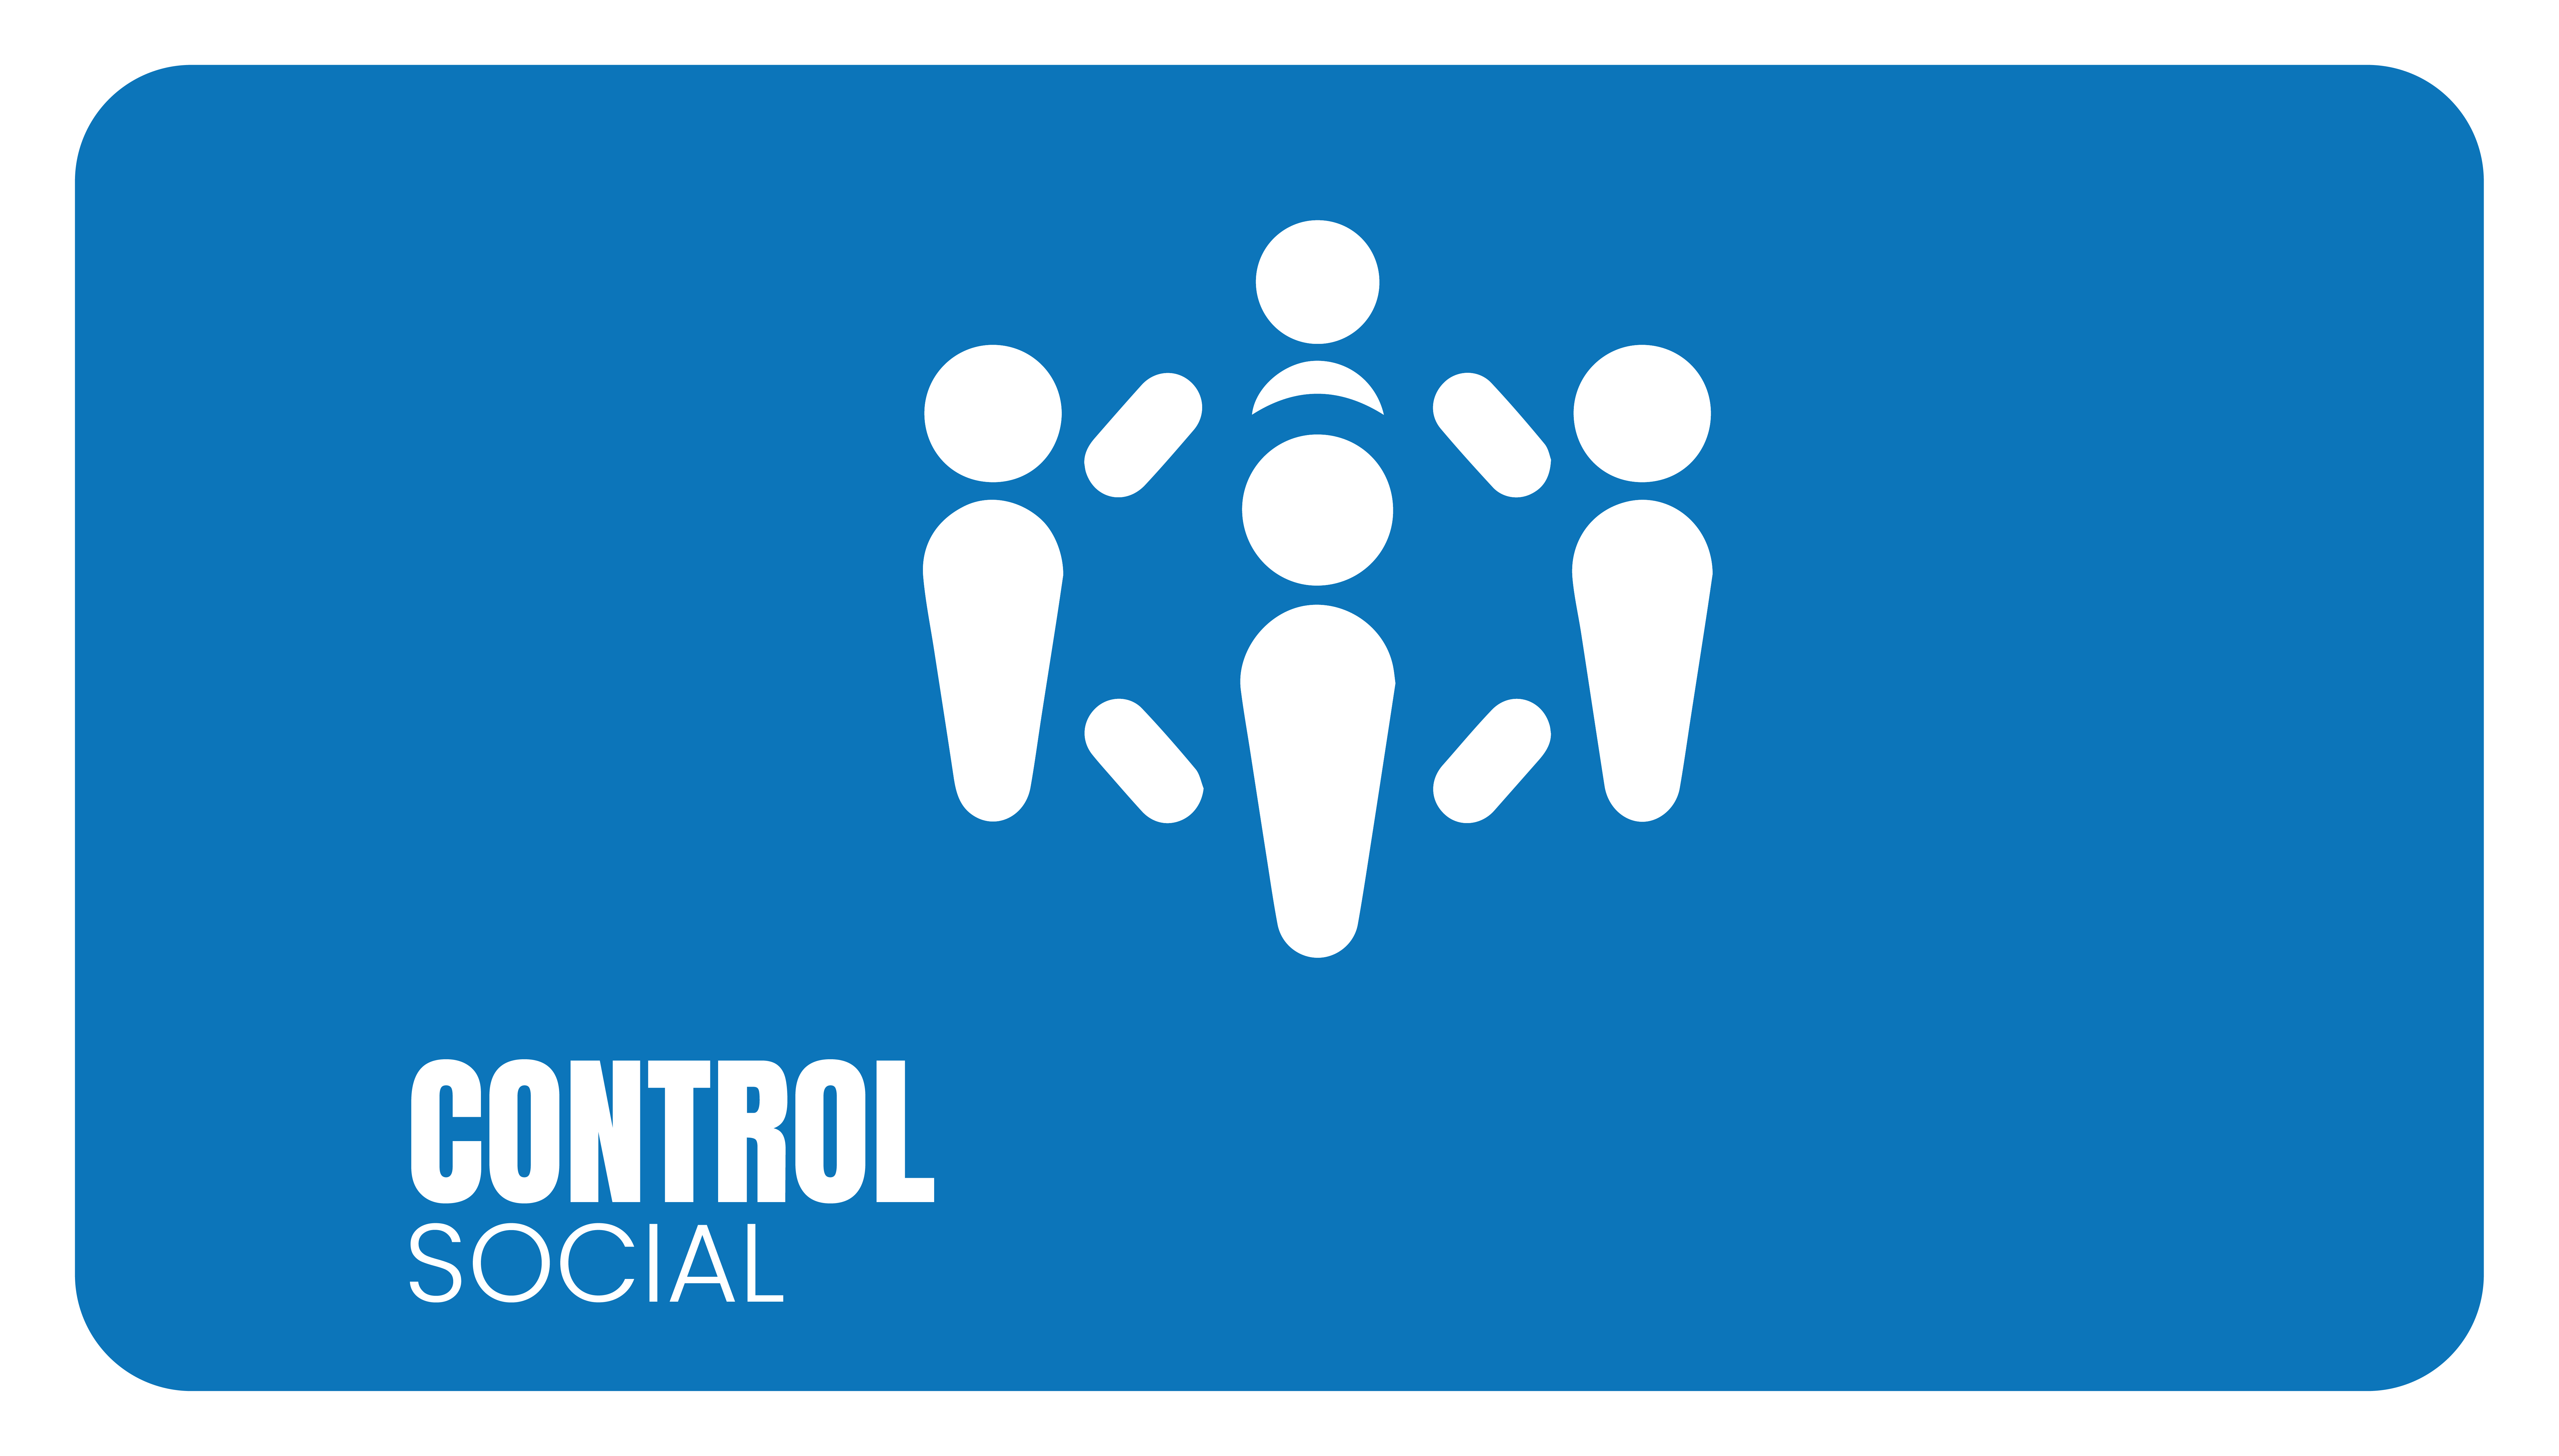 4_CONTROL_SOCIAL.png - 340.35 kB